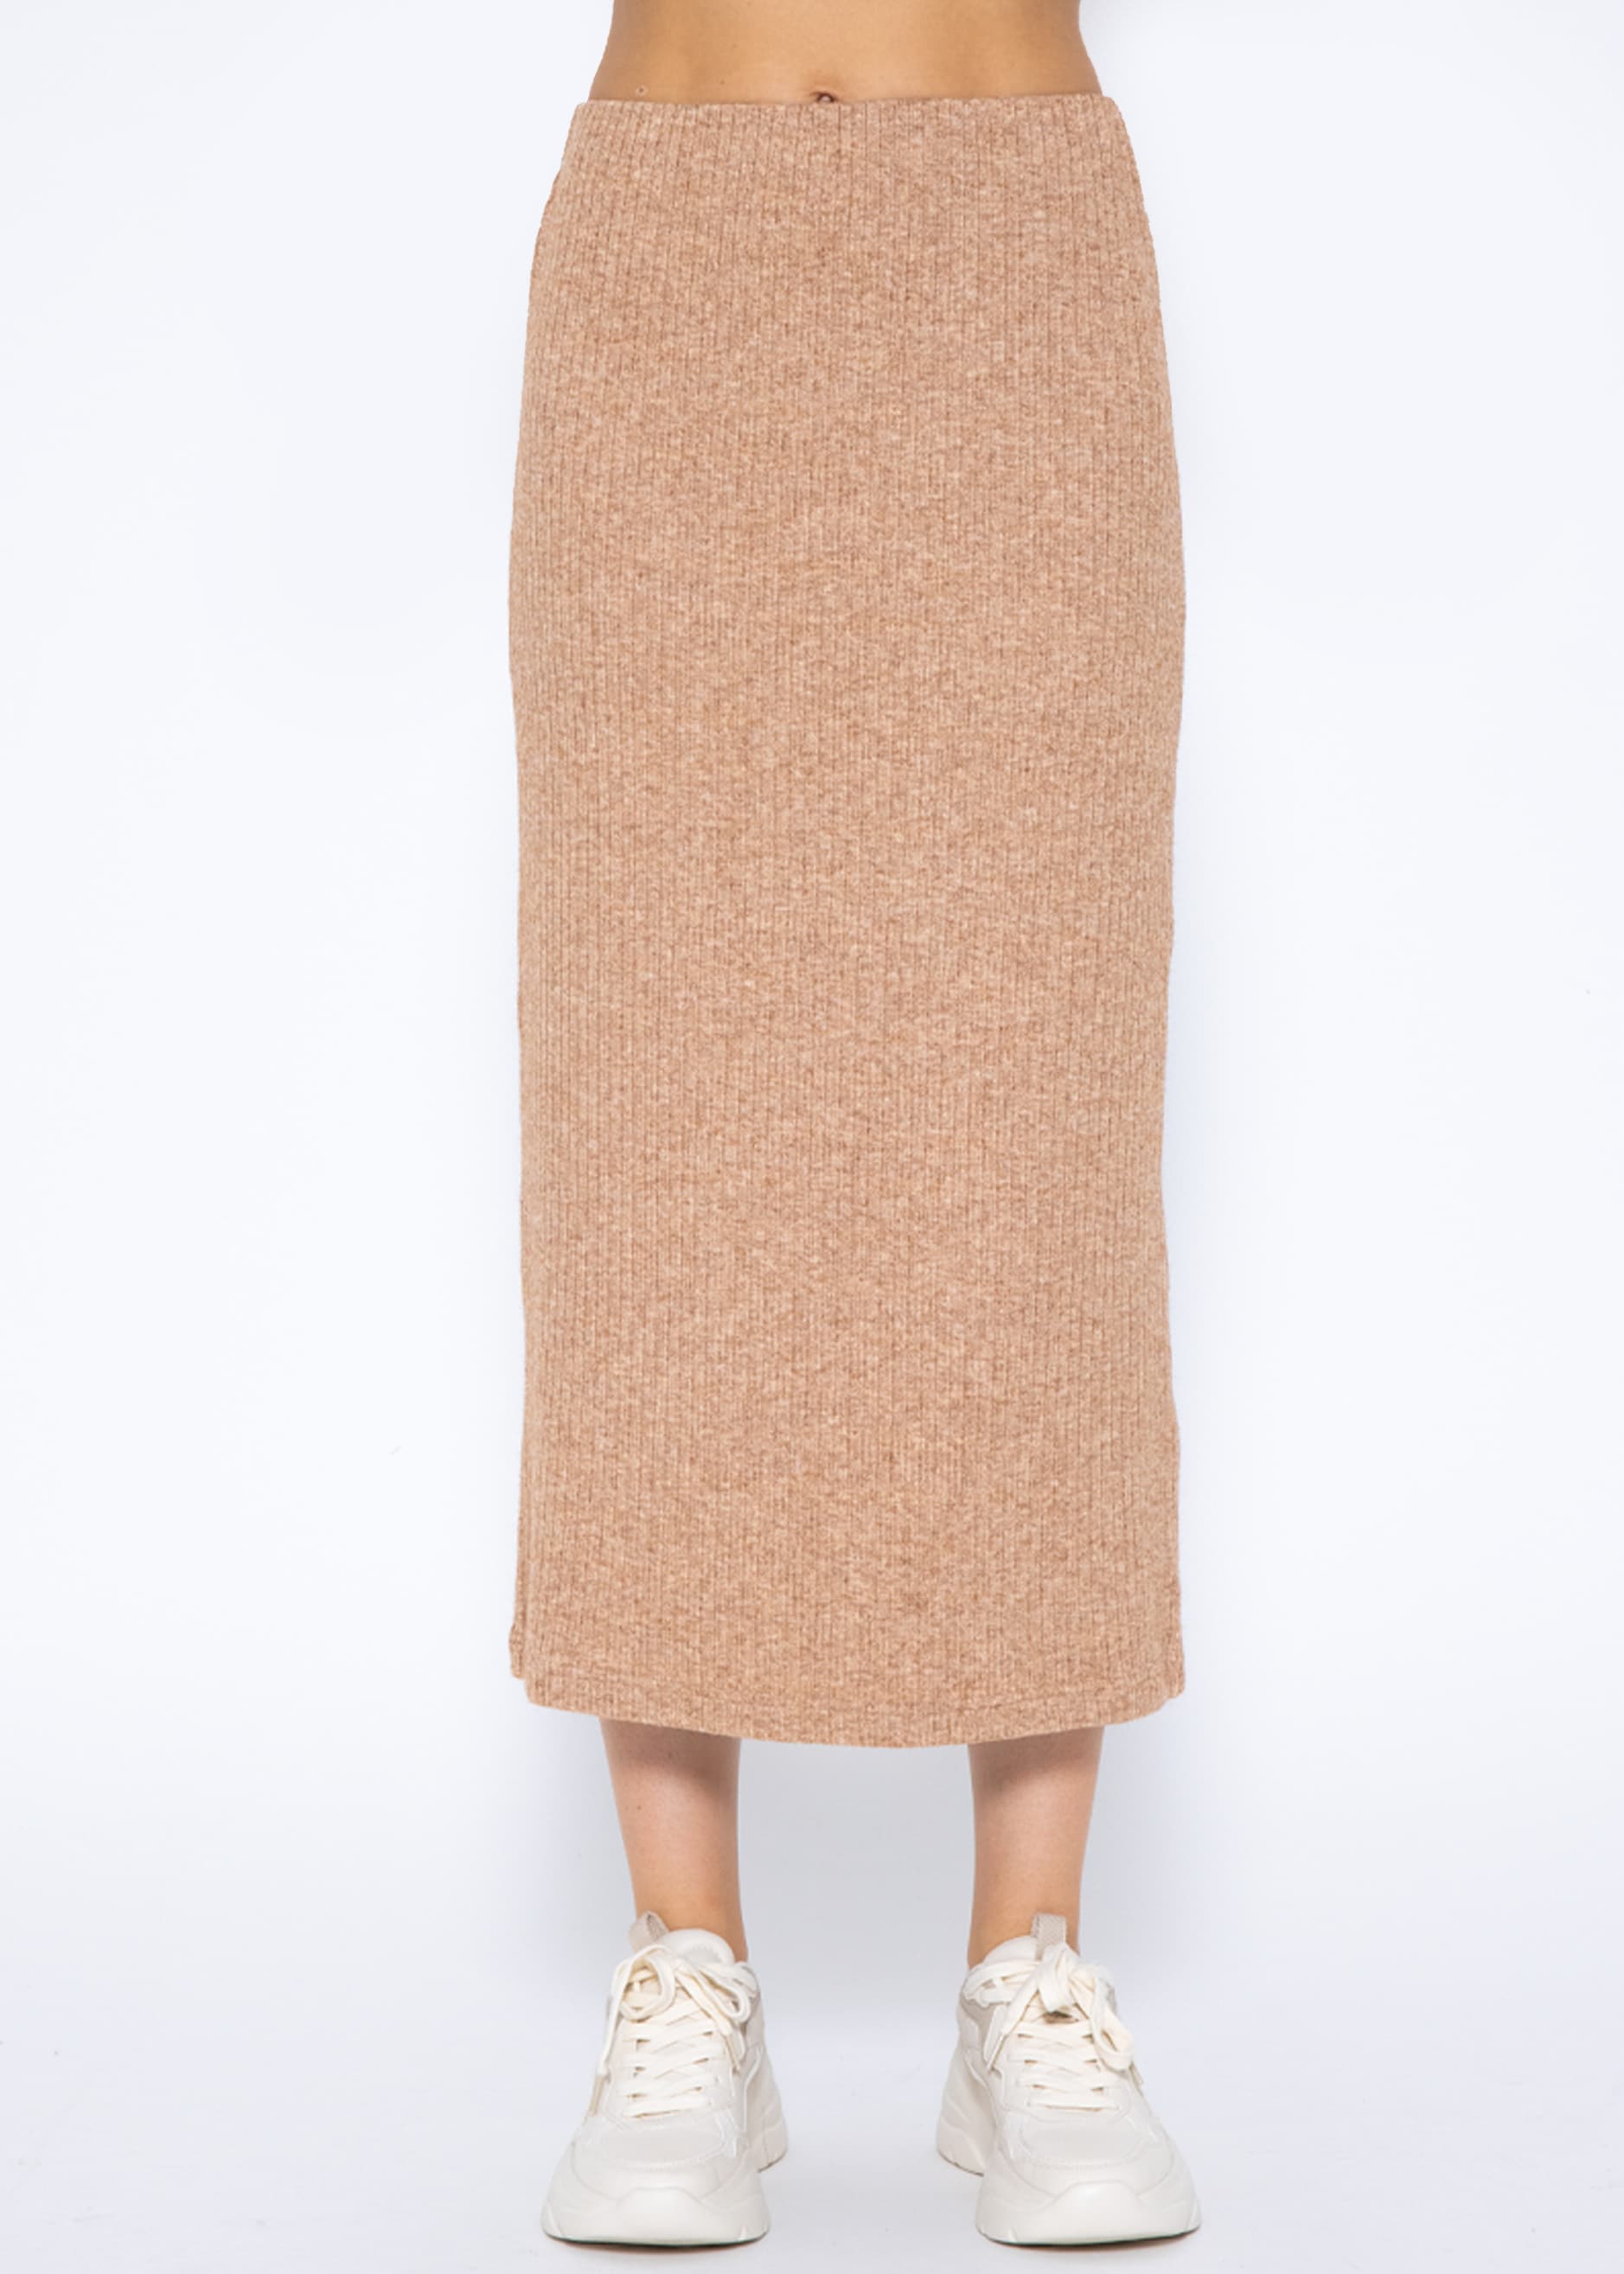 цена Длинная юбка SASSYCLASSY Maxi (Röcke), серо коричневый